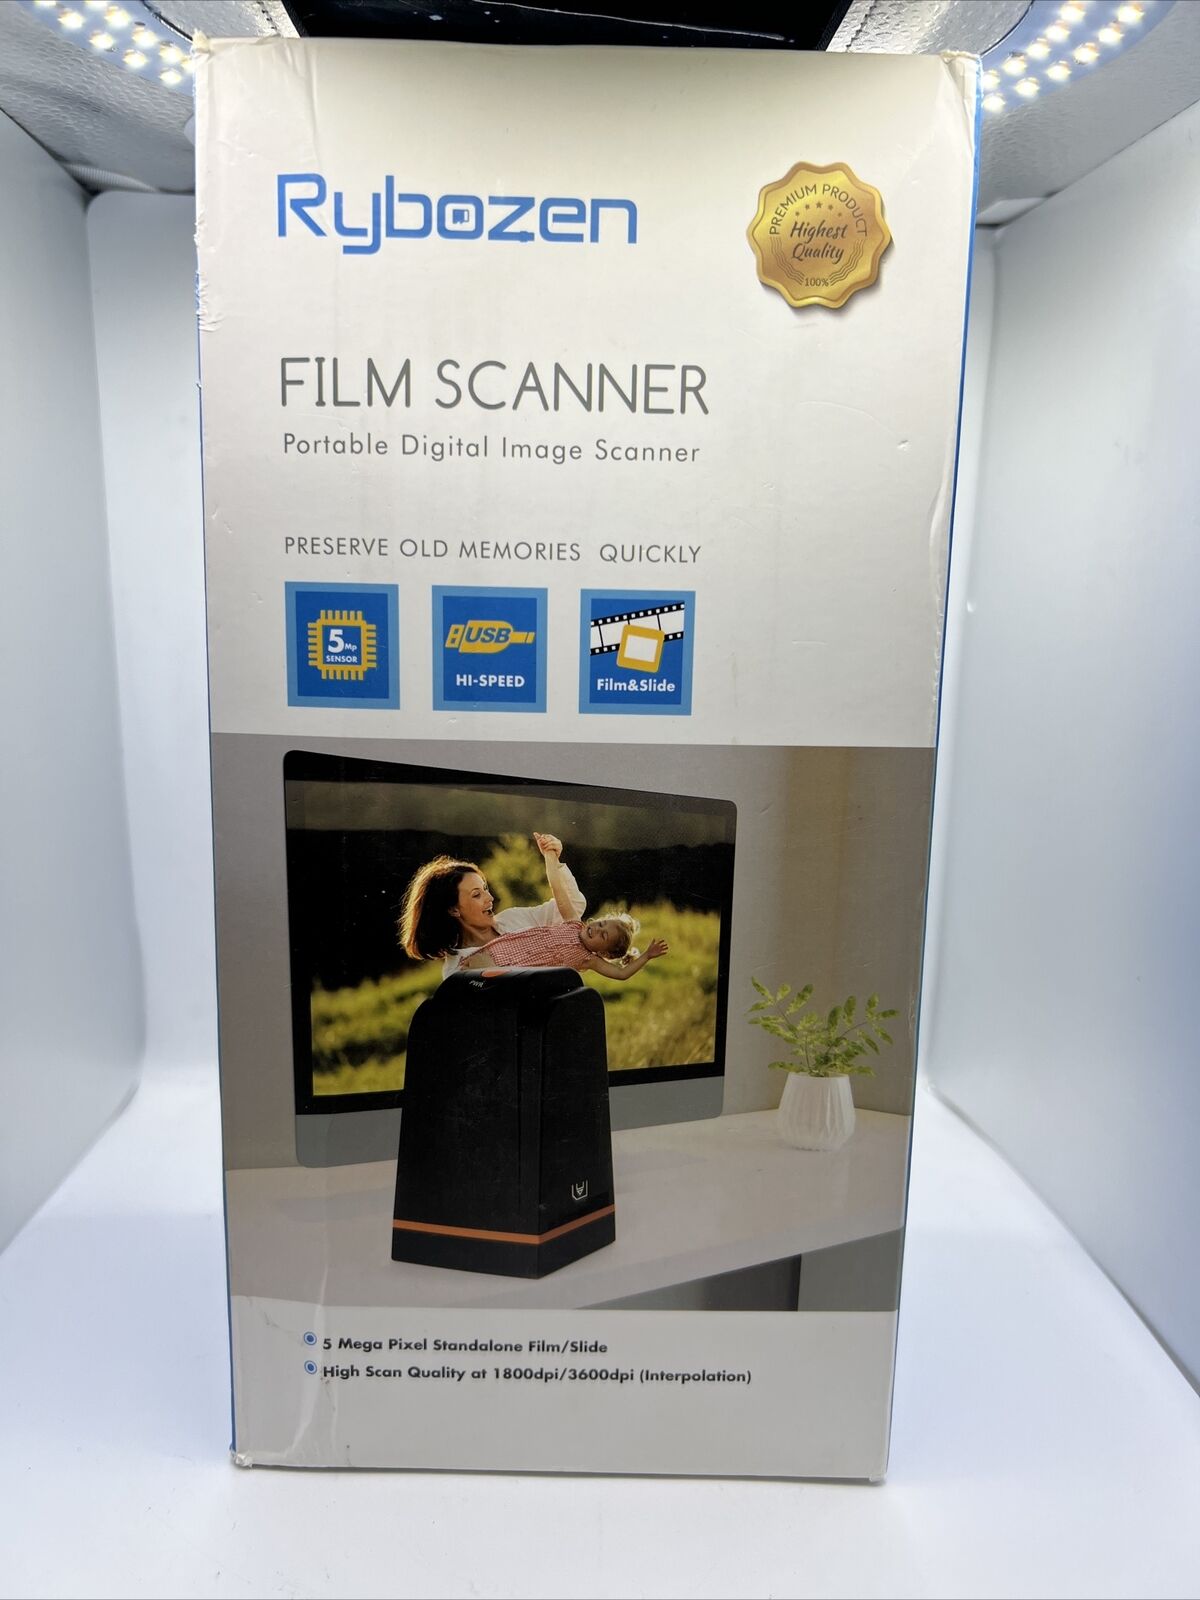 DigitNow Film Scanner Portable Digital Image Scanner (Black)